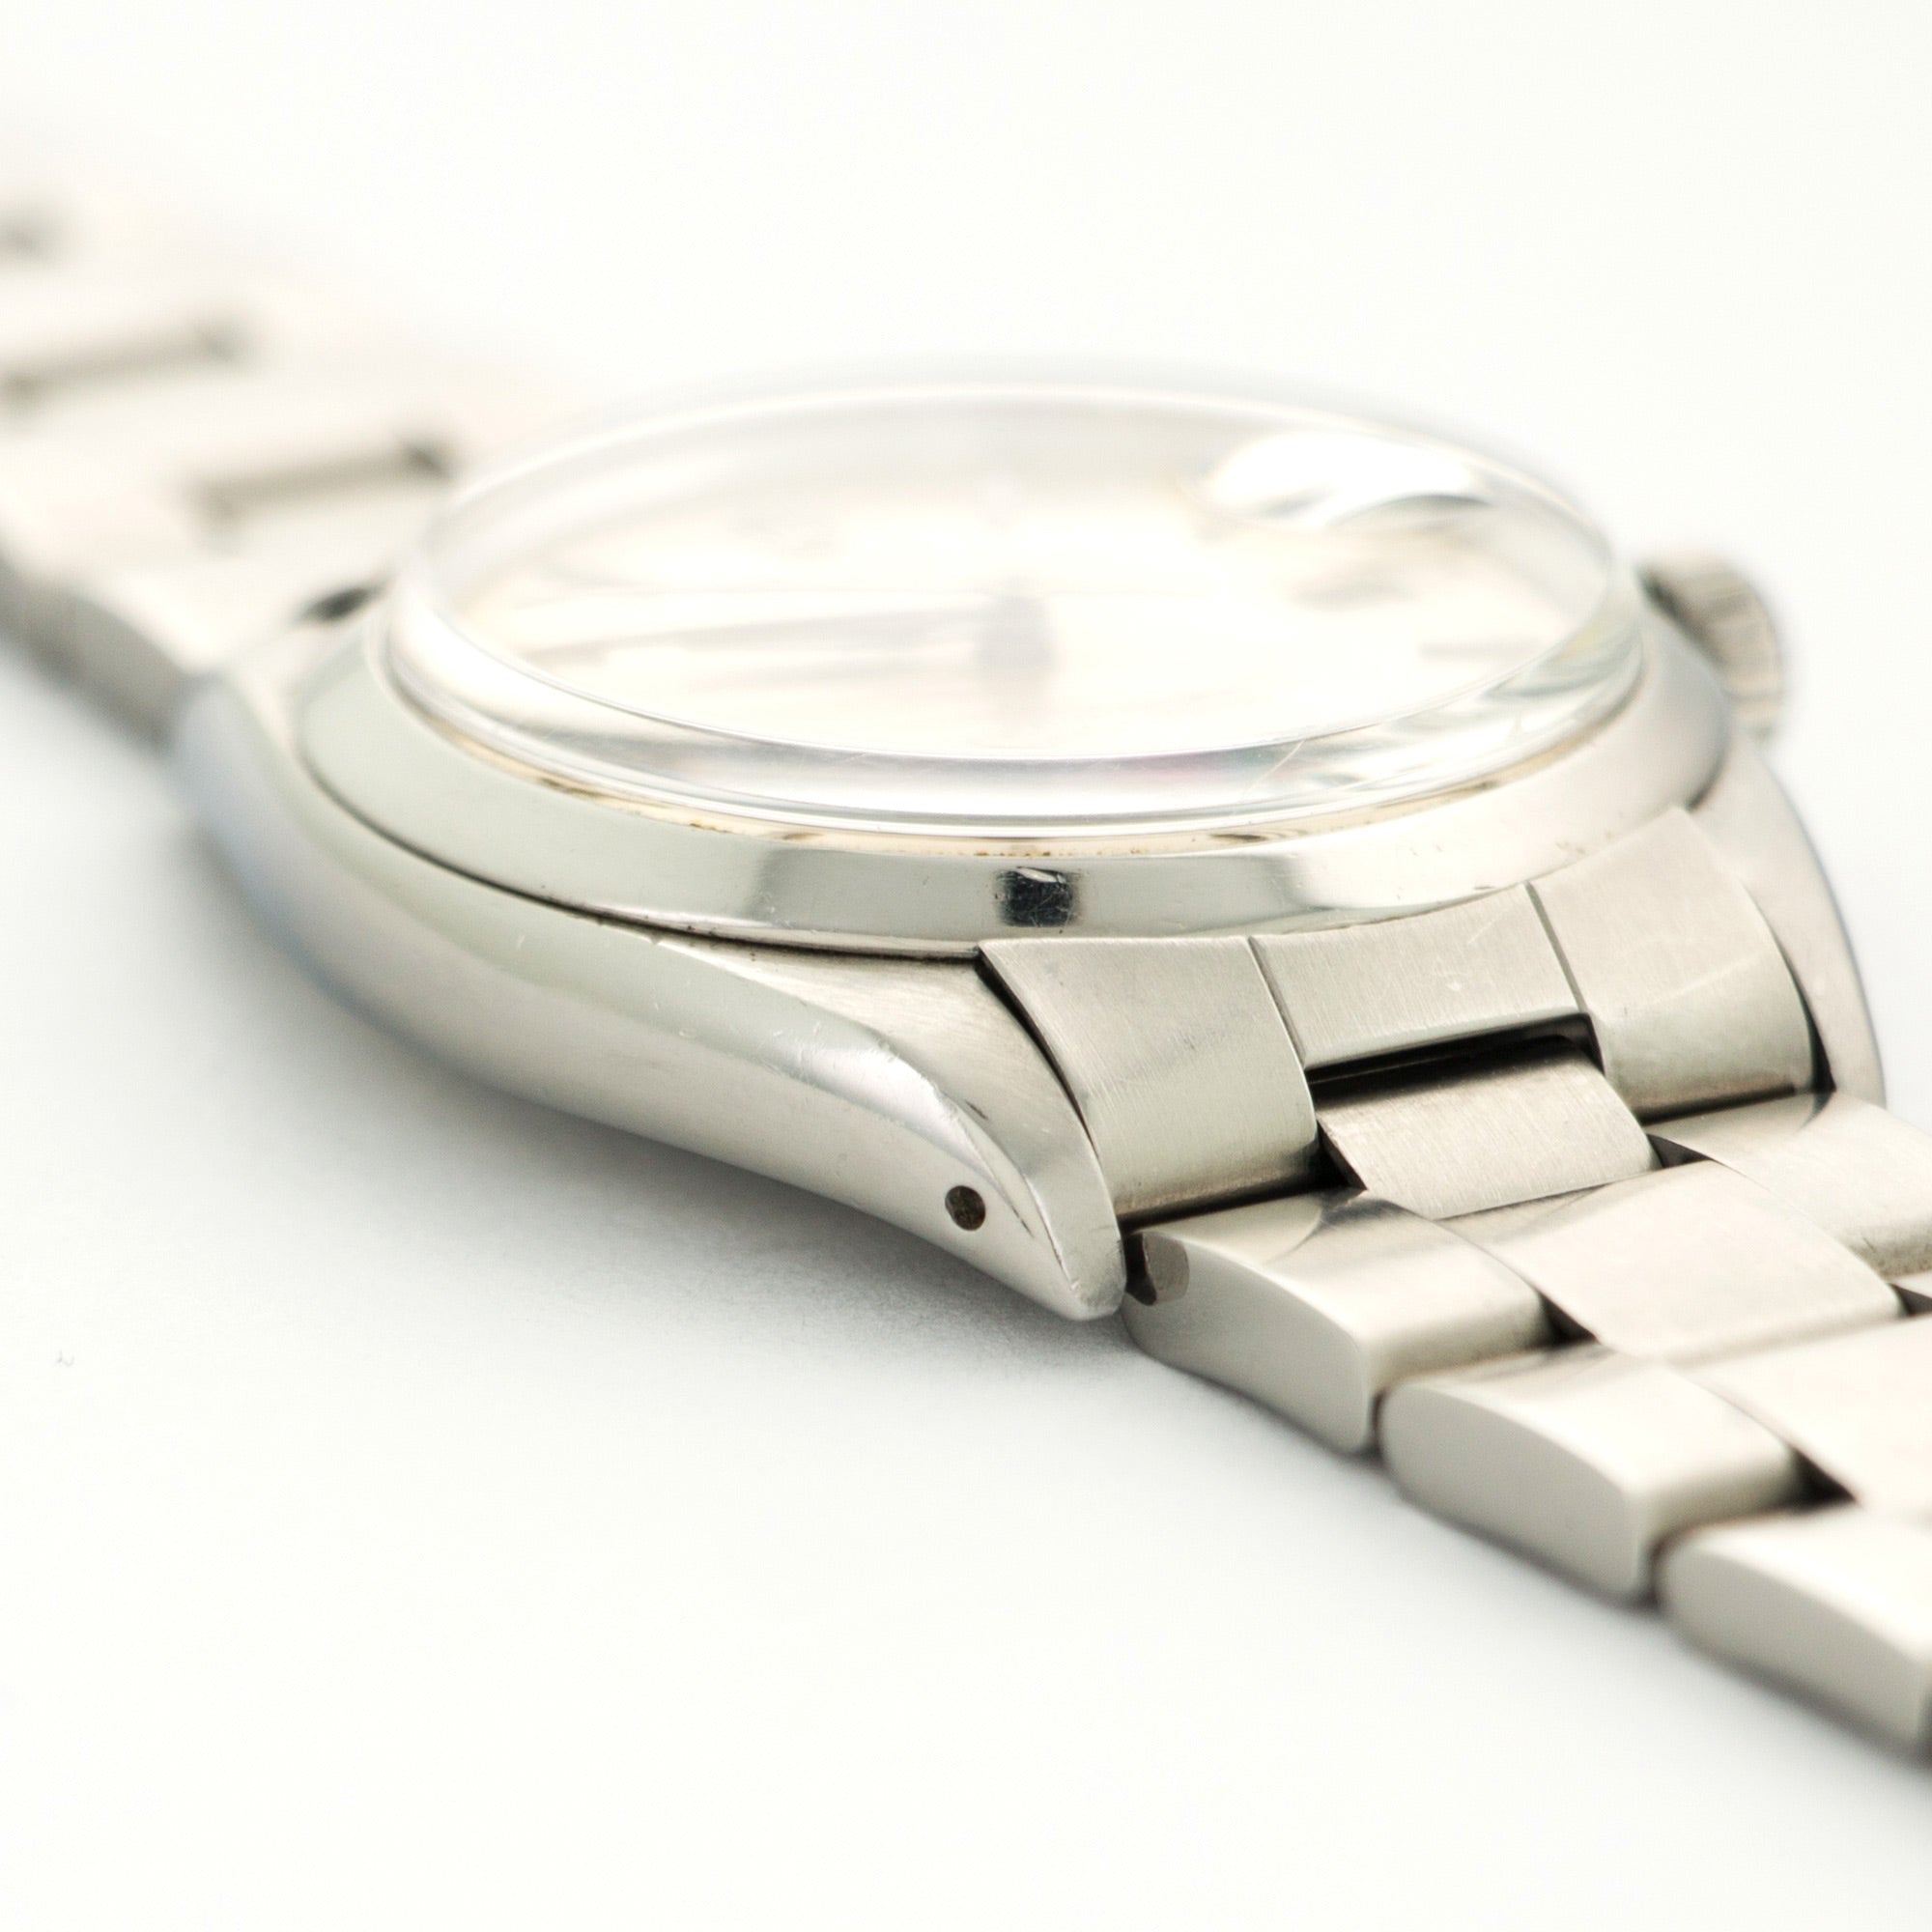 Rolex Stainless Steel Date Watch Ref. 1500